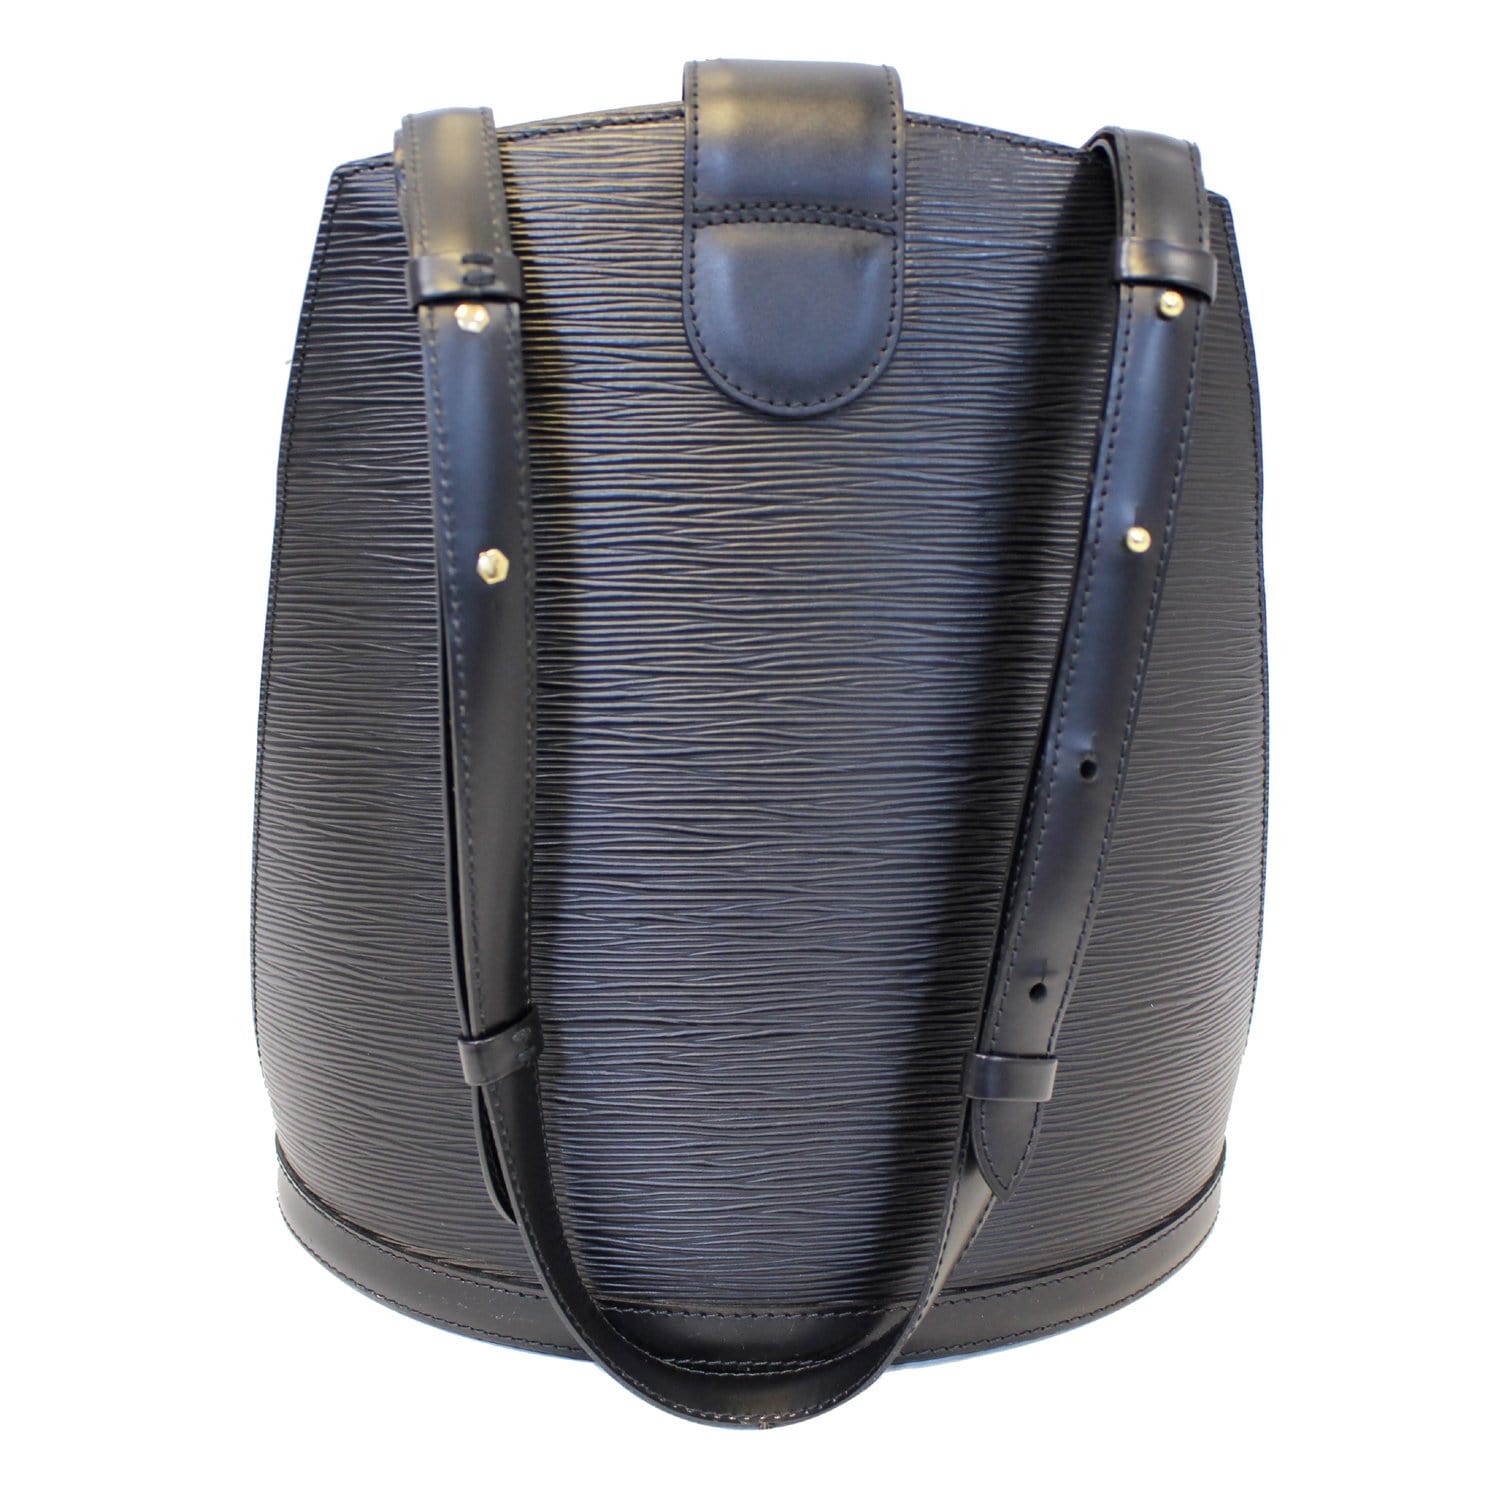 Louis Vuitton Black Epi Leather Cluny Bucket Shoulder Bag Louis